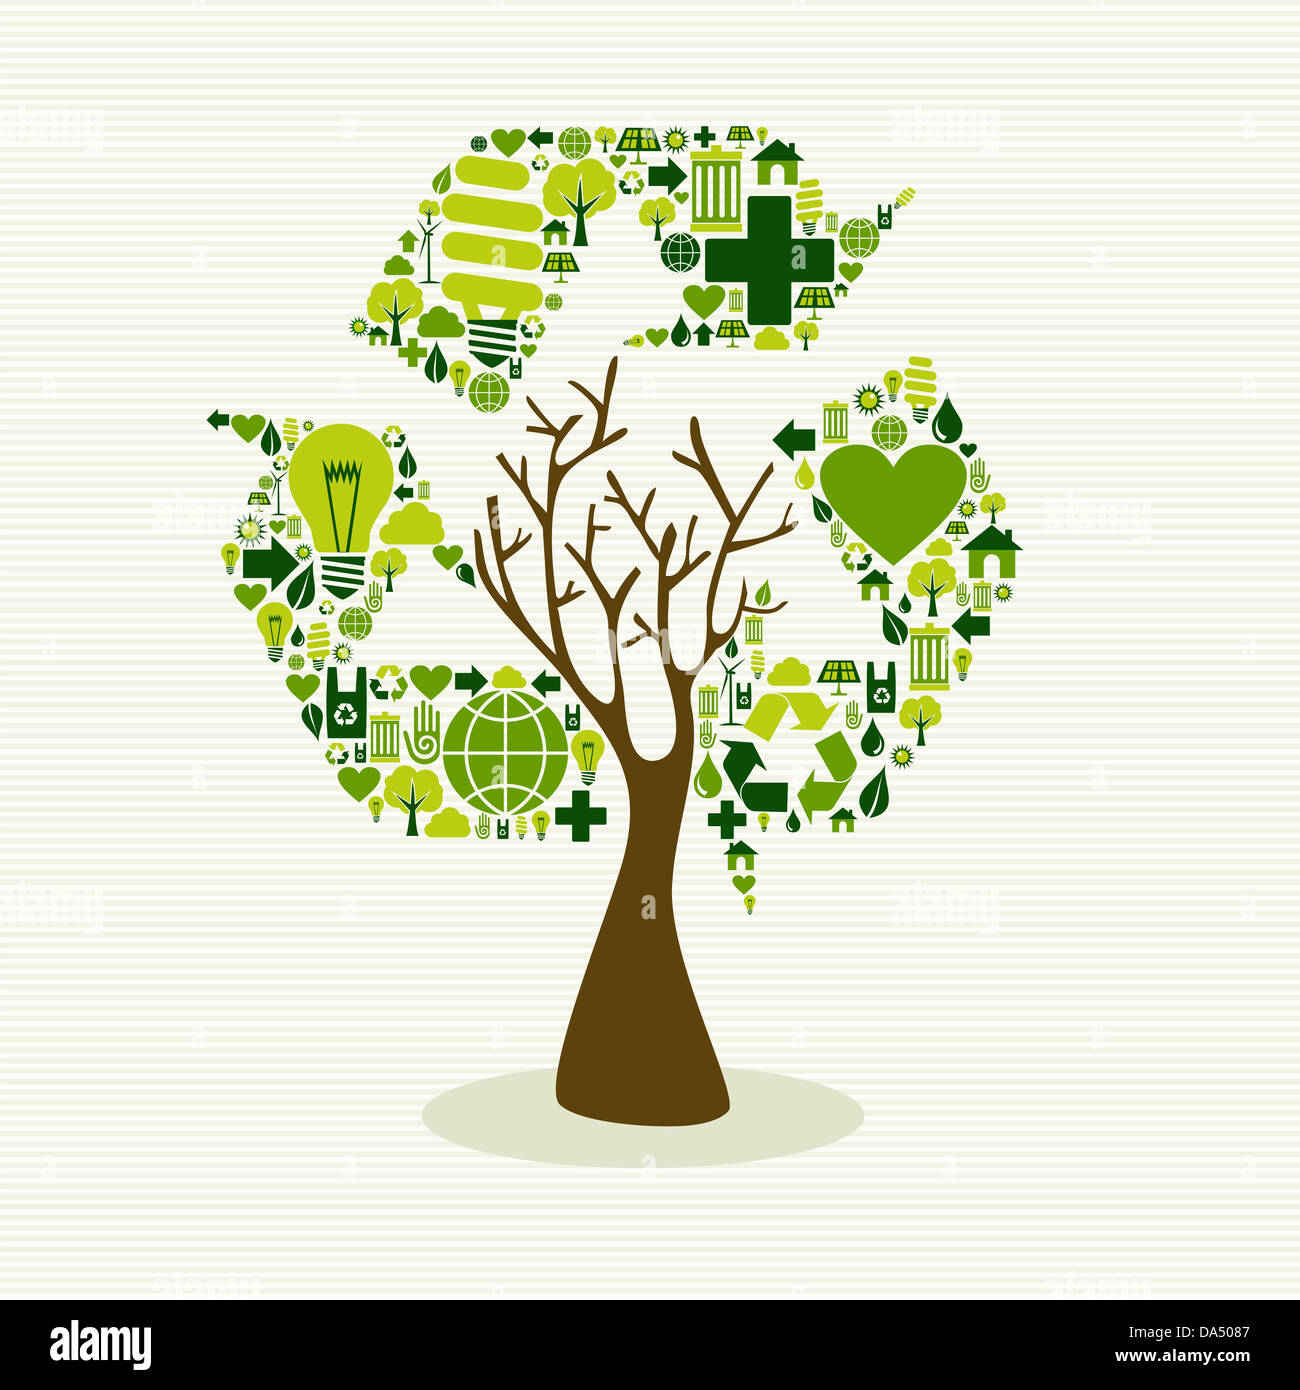 Salvare la struttura ad albero di terra idea con set di icone. Questa illustrazione è stratificata per una facile manipolazione e colorazione personalizzata Foto Stock